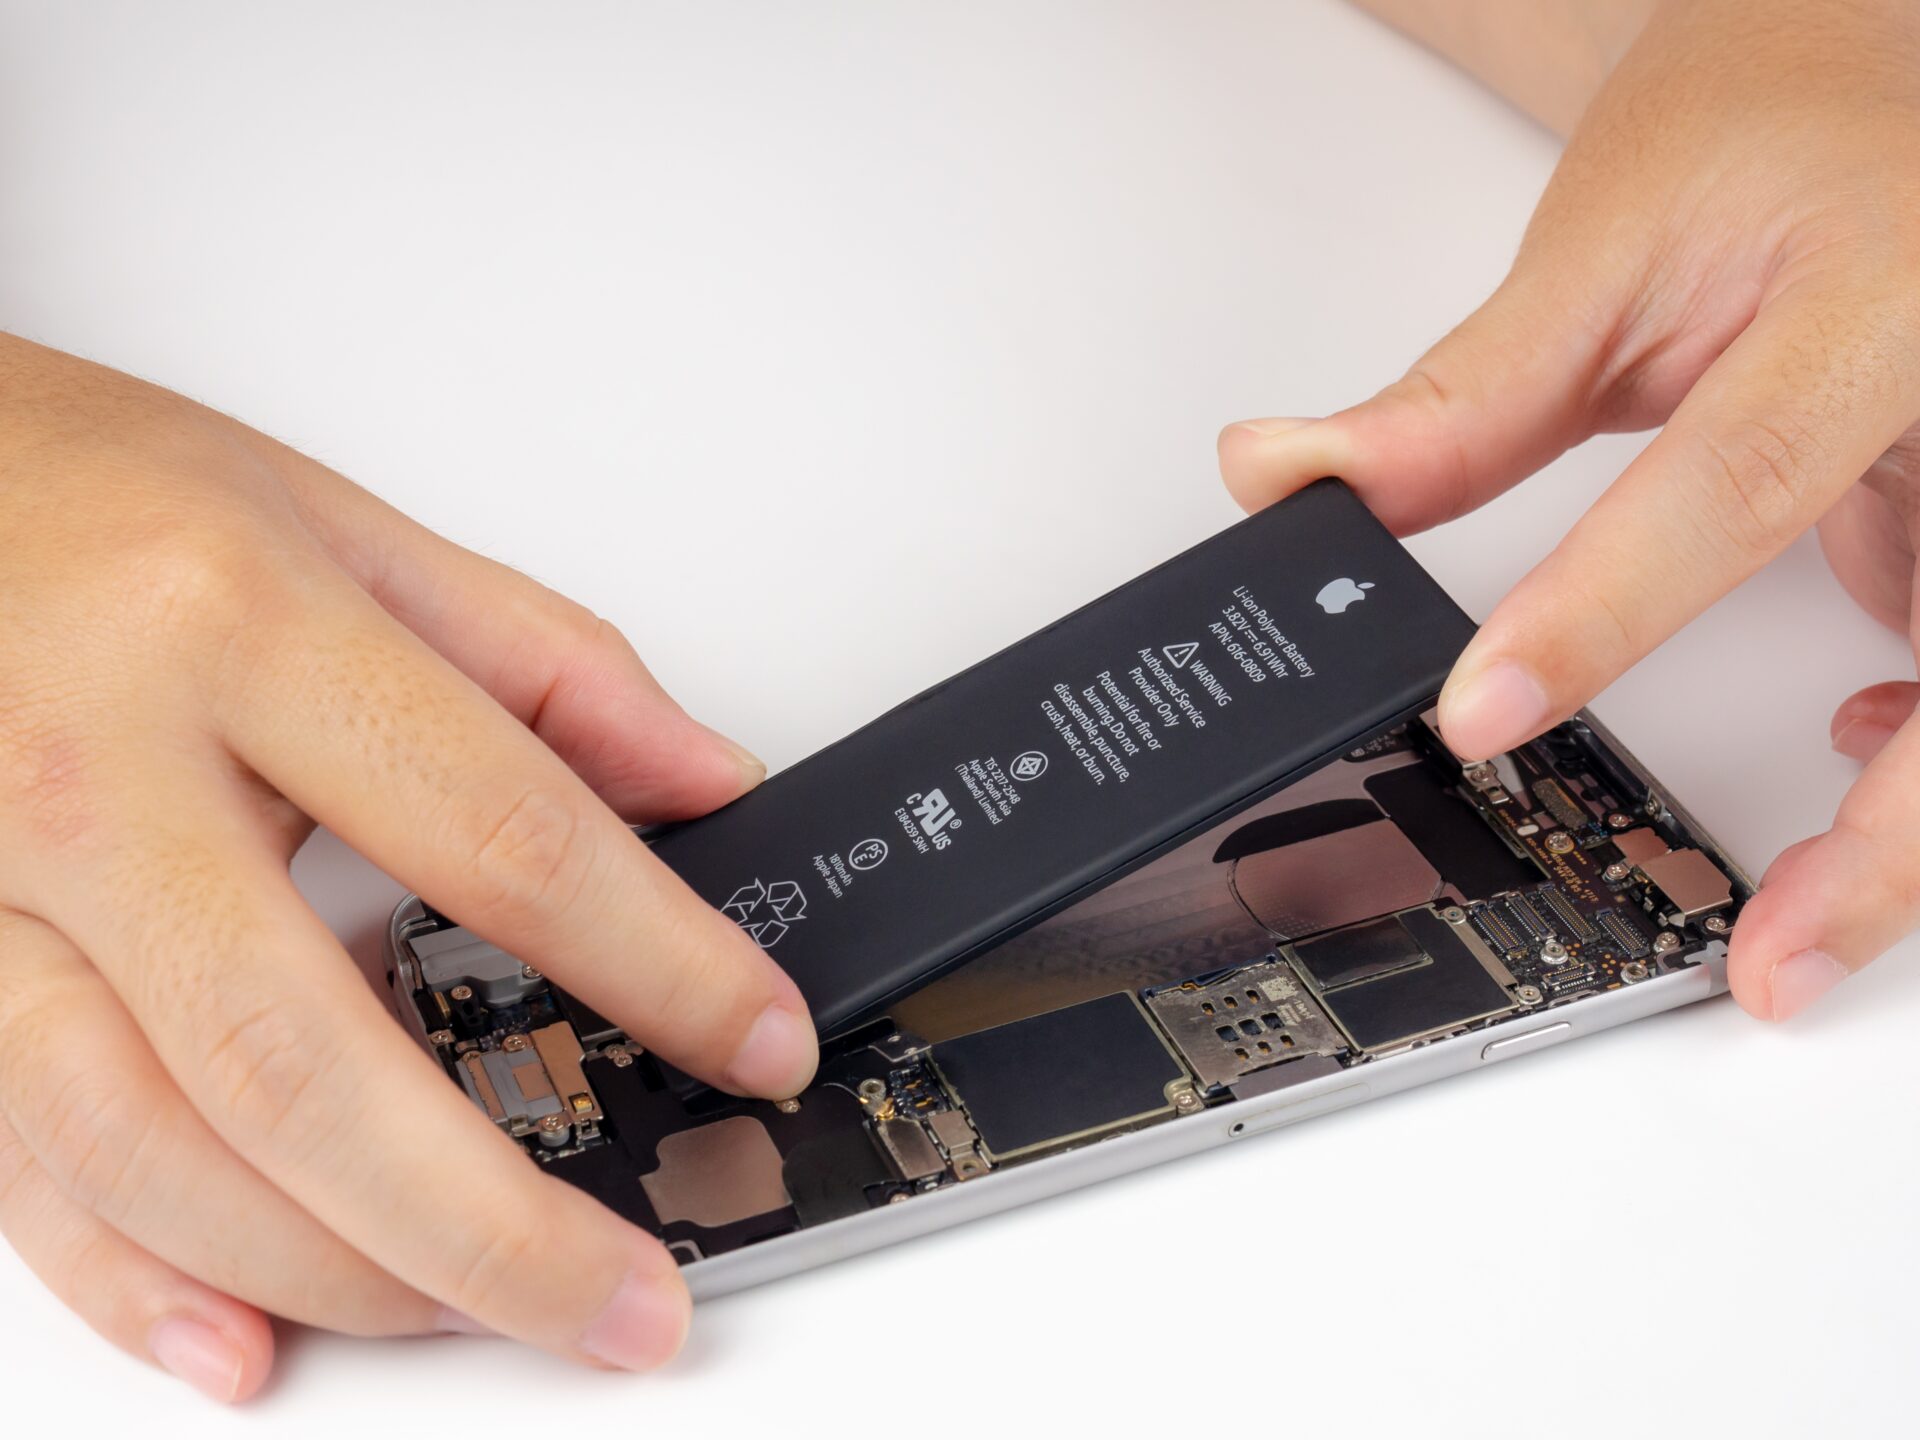 Changer la batterie d’un produit Apple coûtera bien plus cher à partir de mars